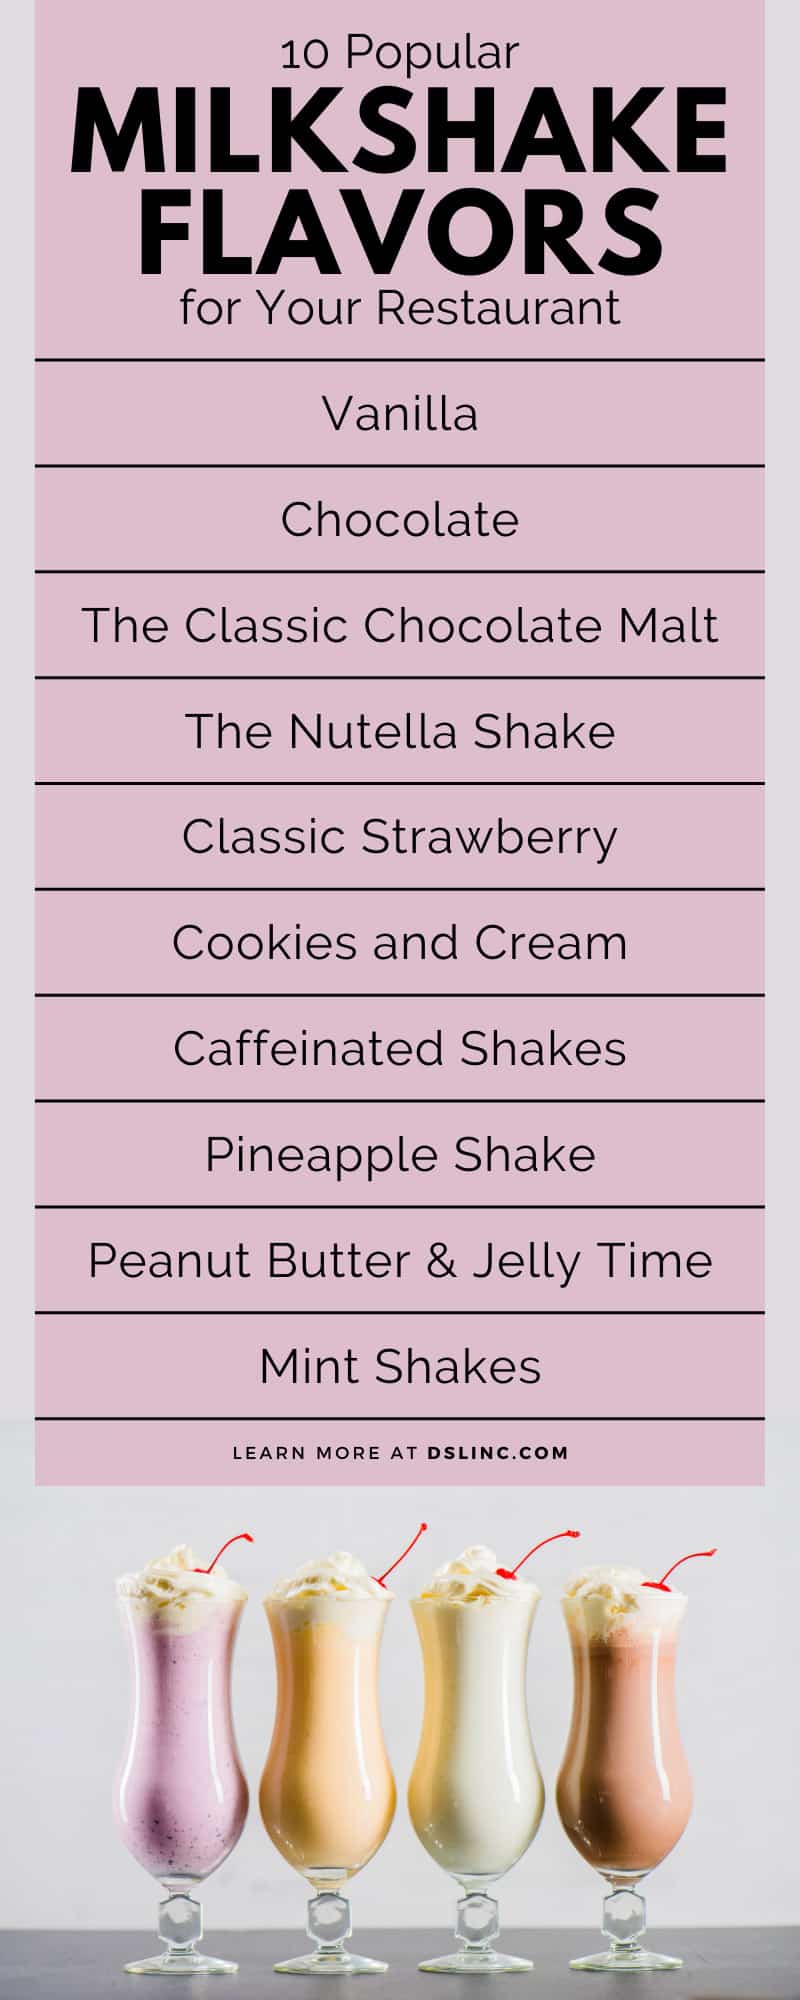 10 Popular Milkshake Flavors for Your Restaurant